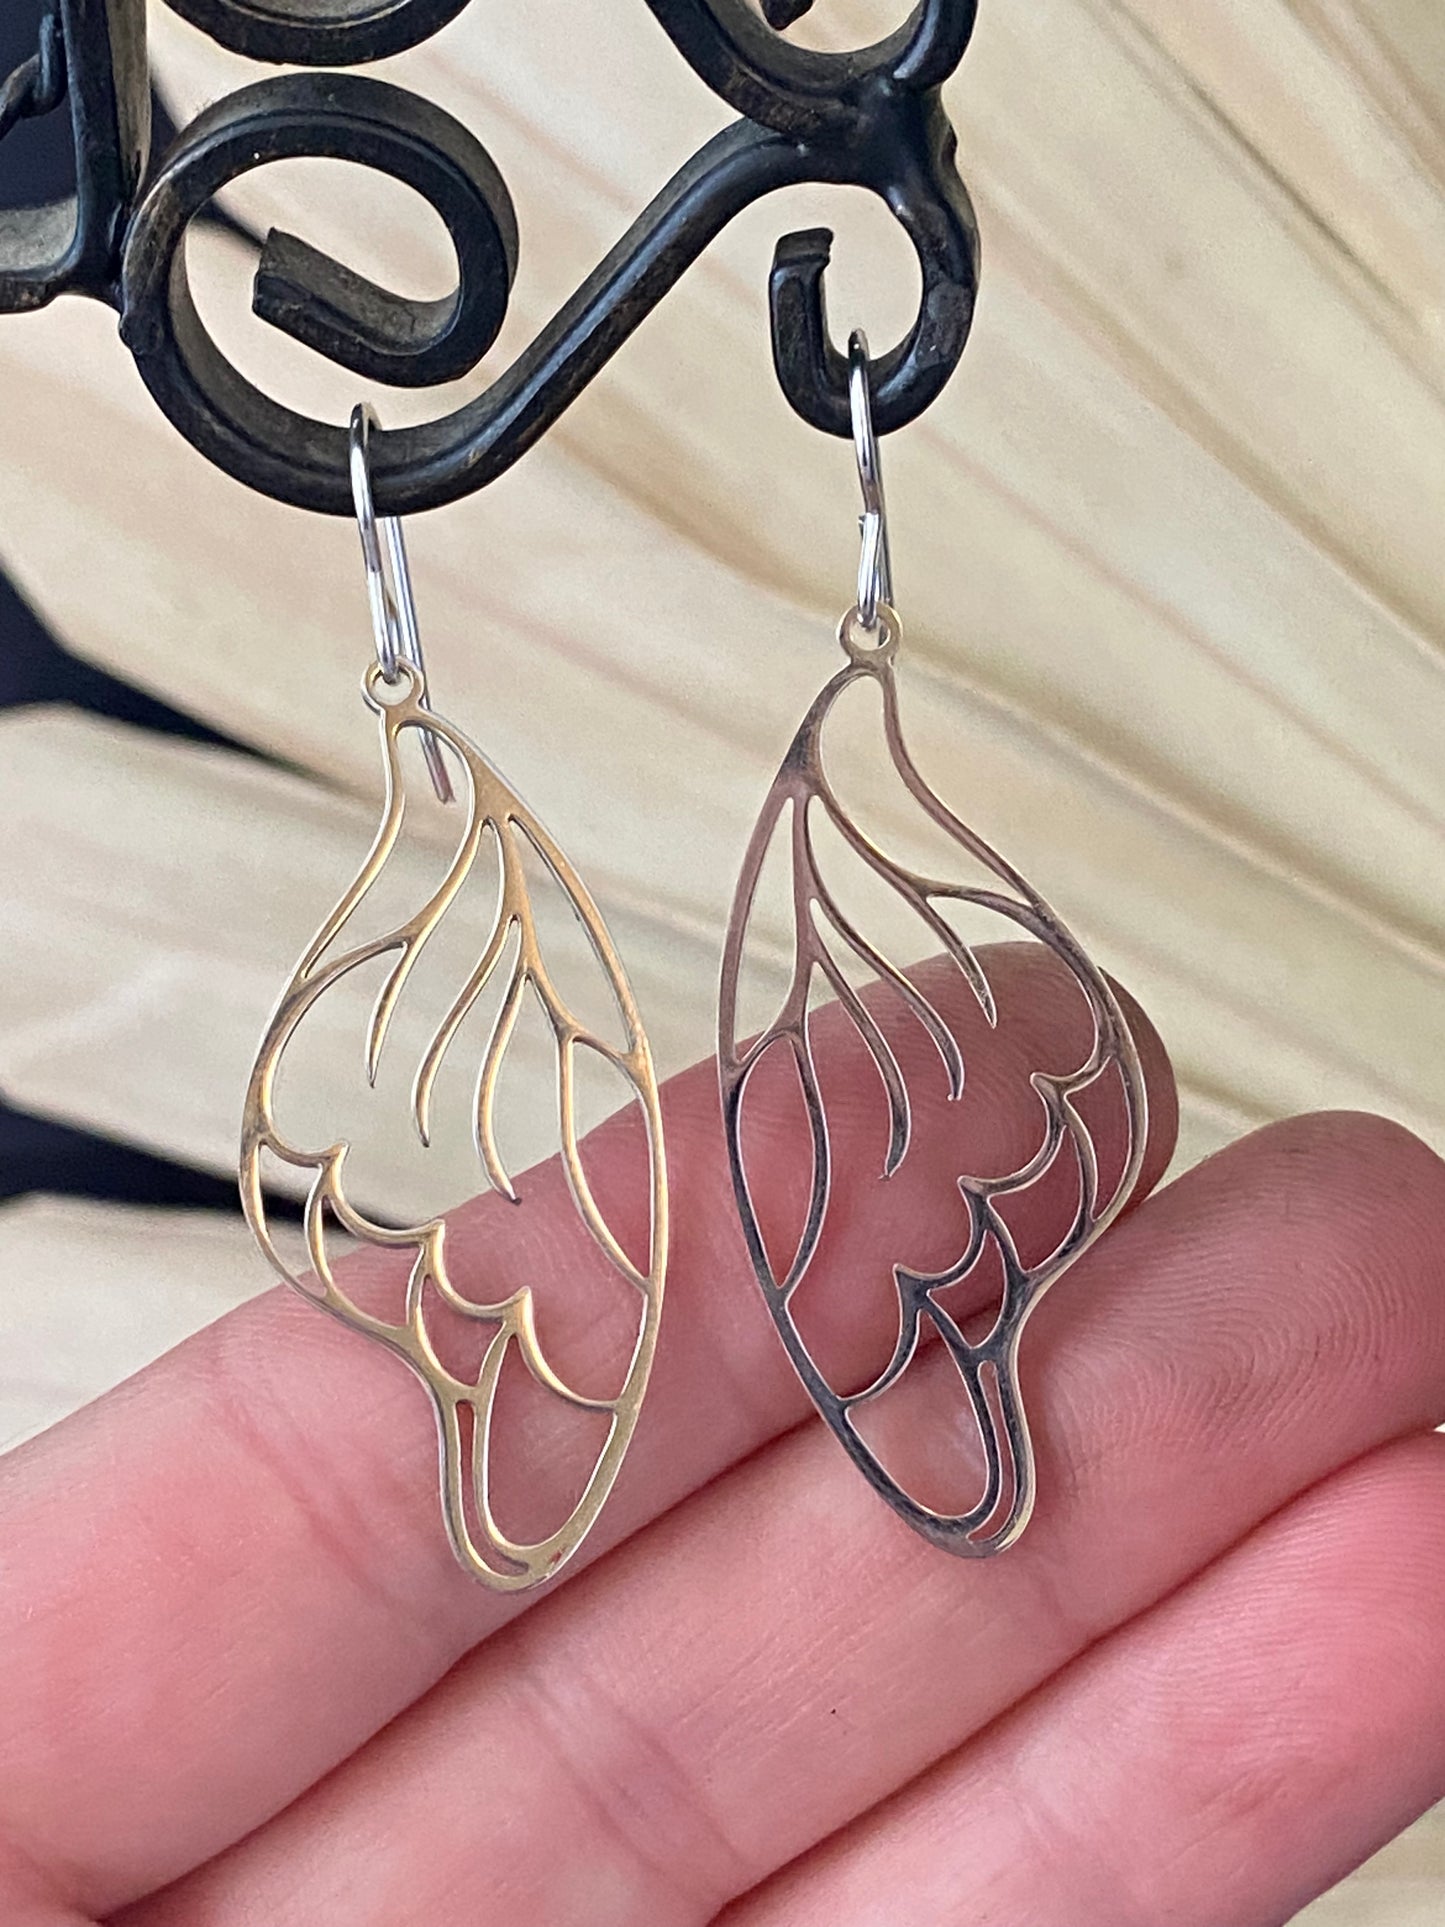 Silver butterfly wing charm earrings